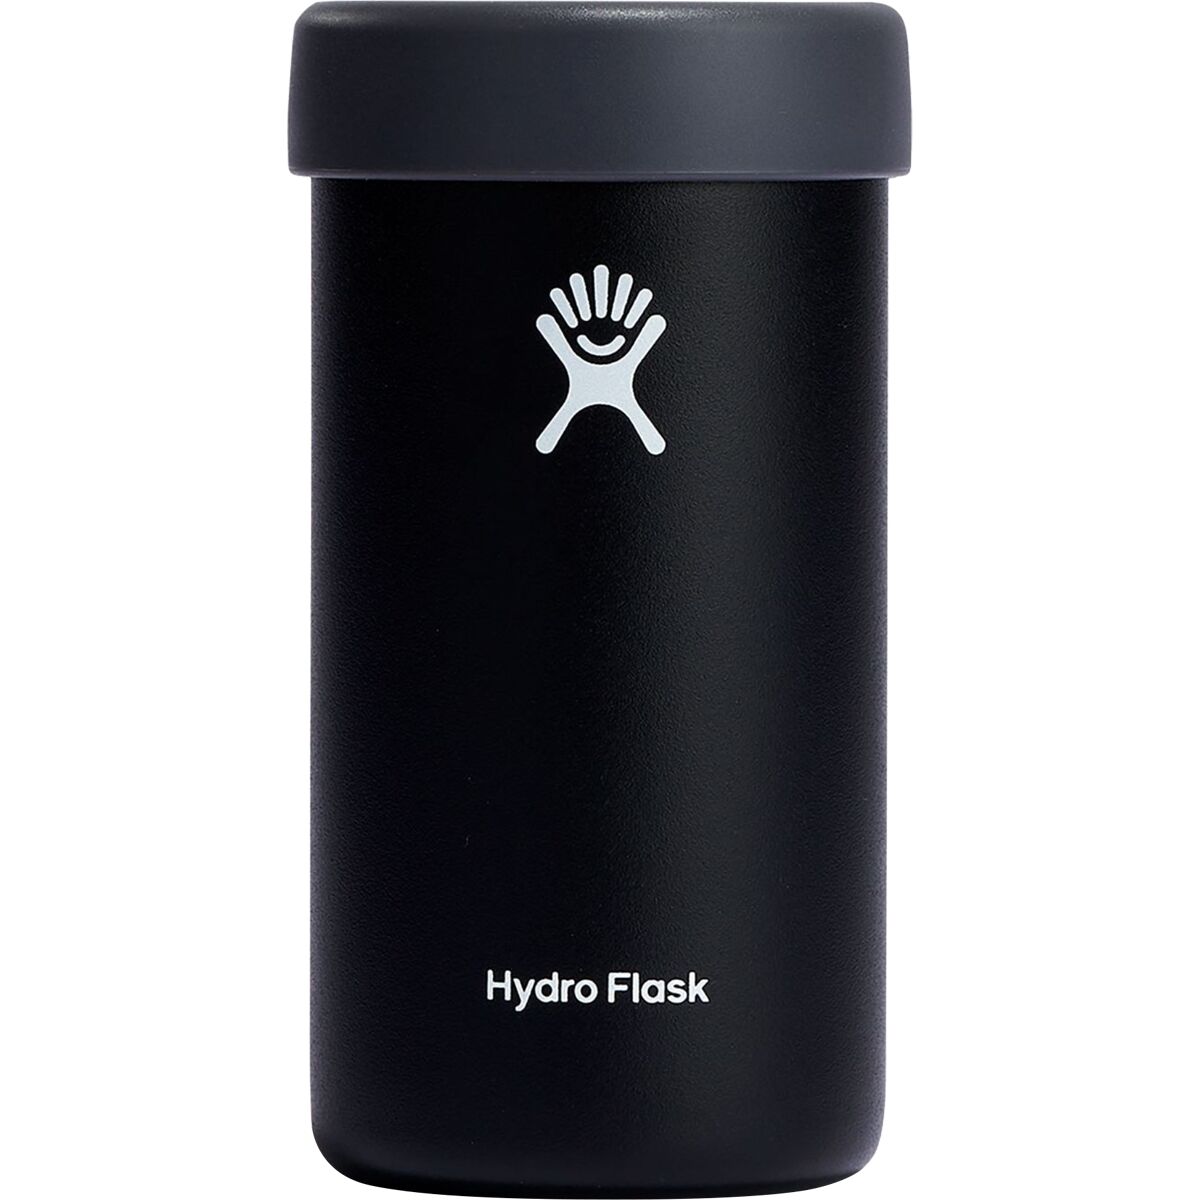 Hydro Flask 16oz Tall Boy